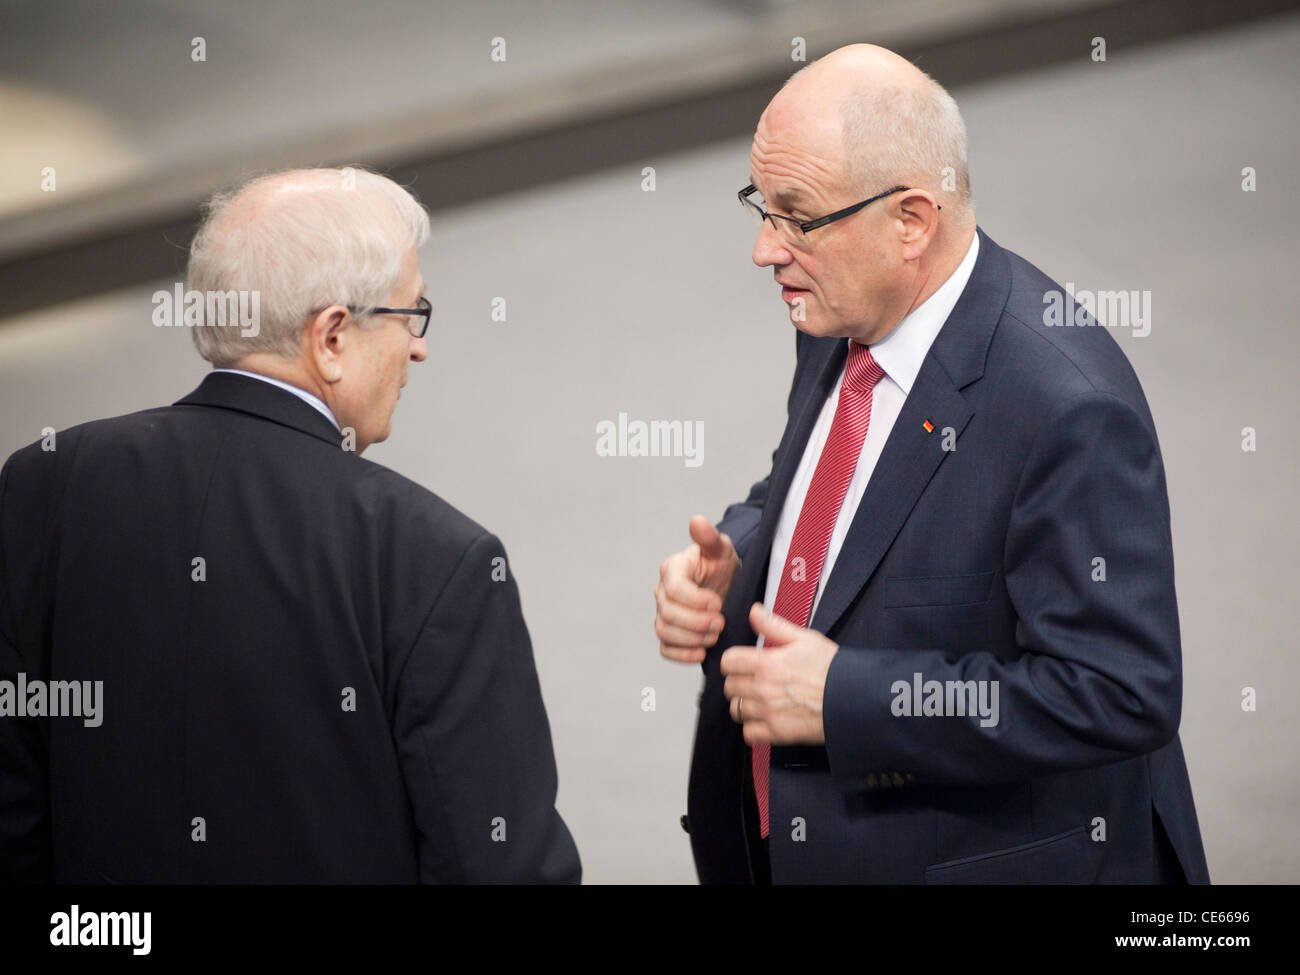 Rainer Bruederle, FDP Fraktionsvorsitzender und Volker Kauder, CDU/CSU Fraktionsvorsitzender, im Plenum des Deutschen Bundestage Foto Stock